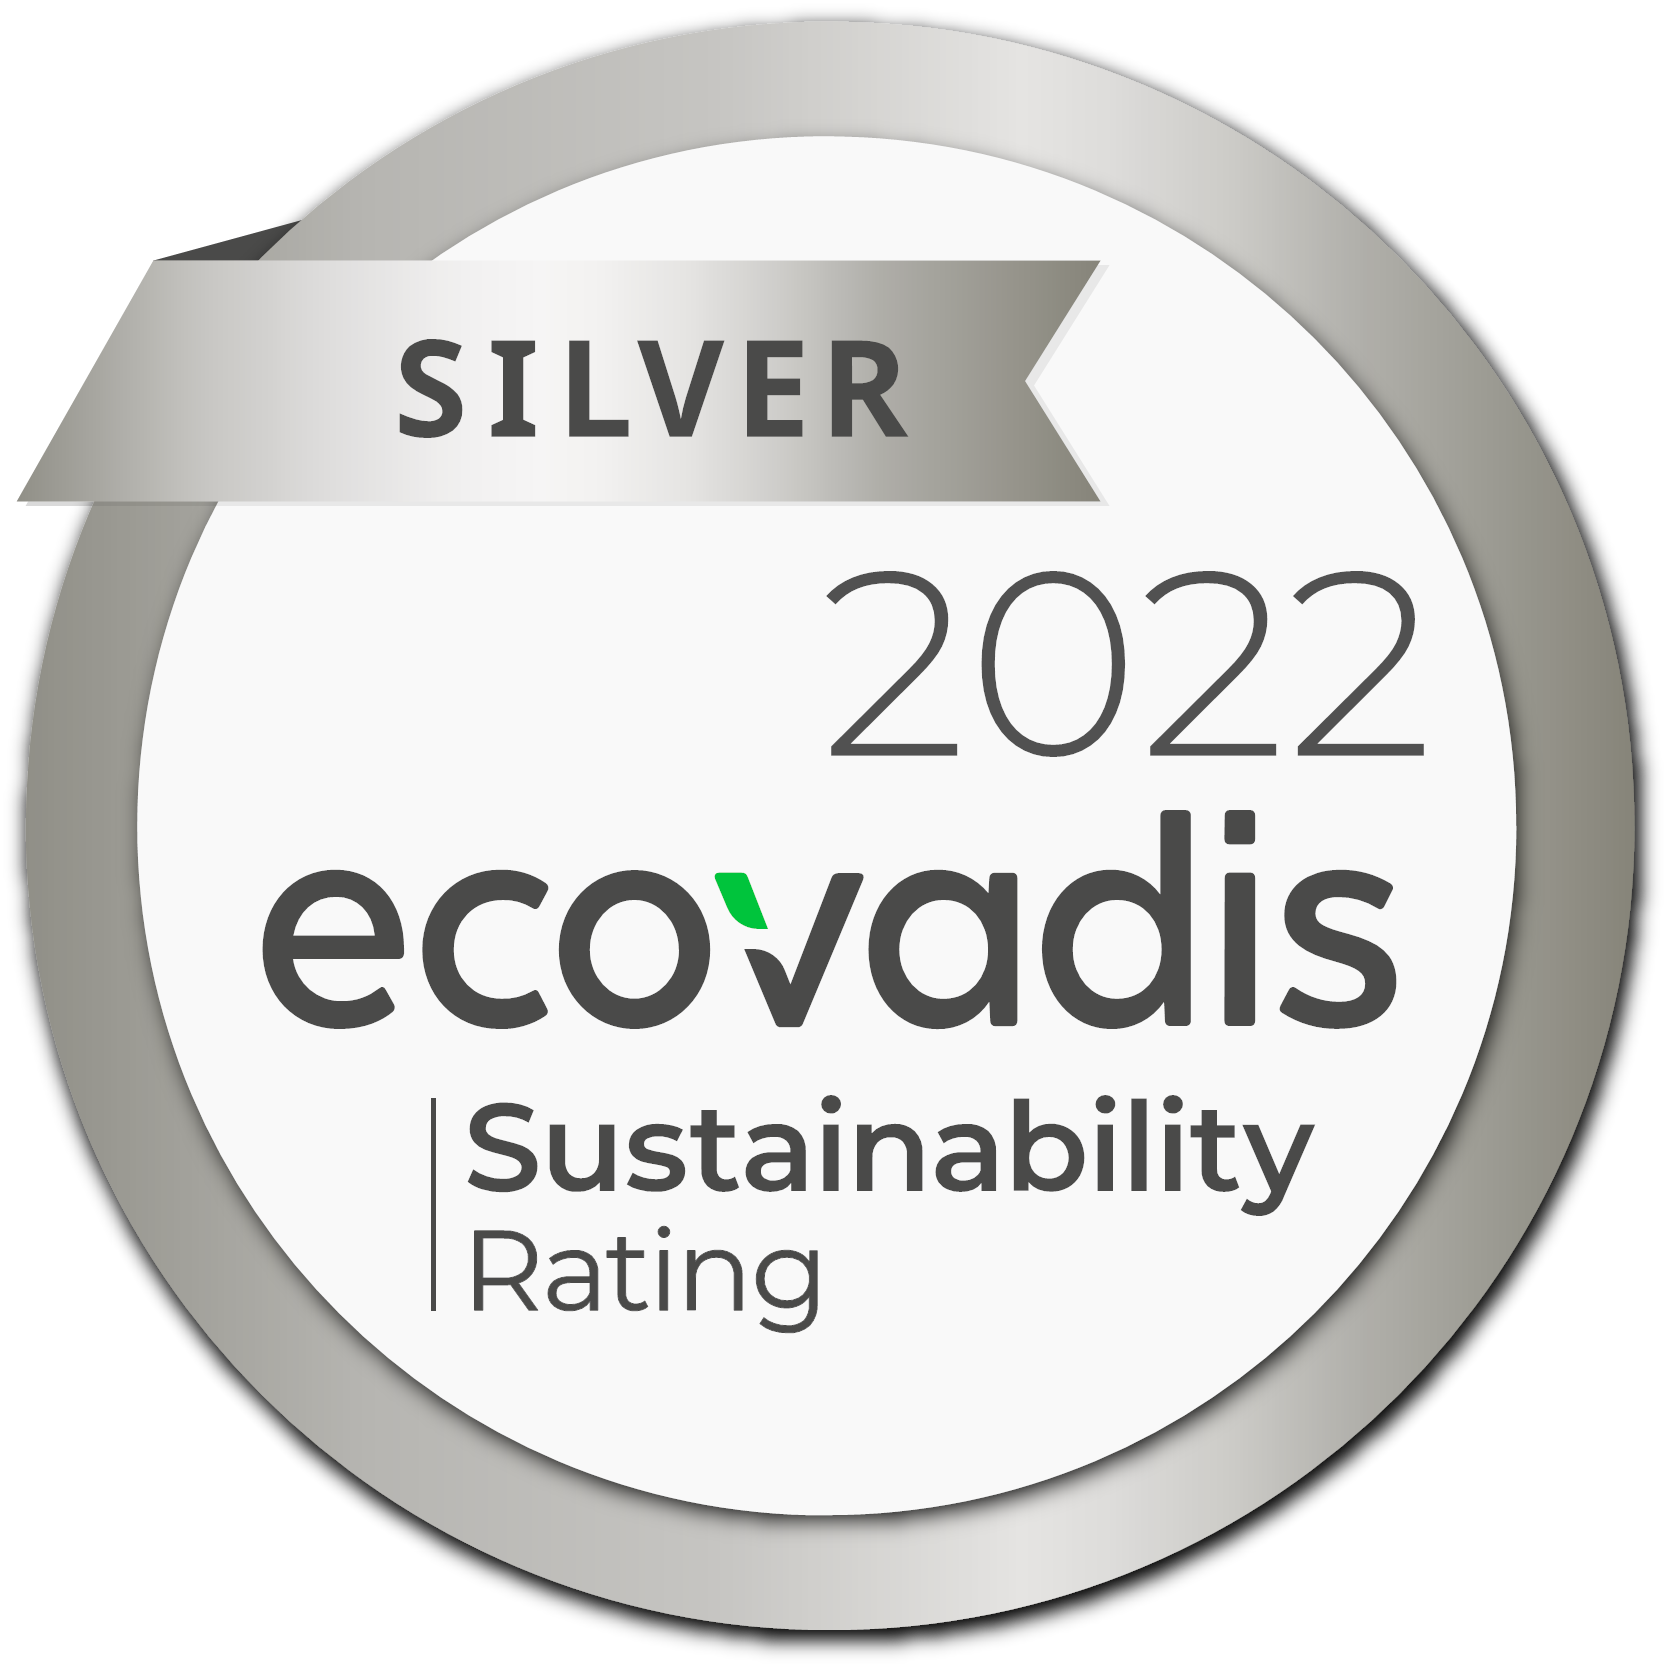 Calificación de sostenibilidad EcoVadis Silver para 2022